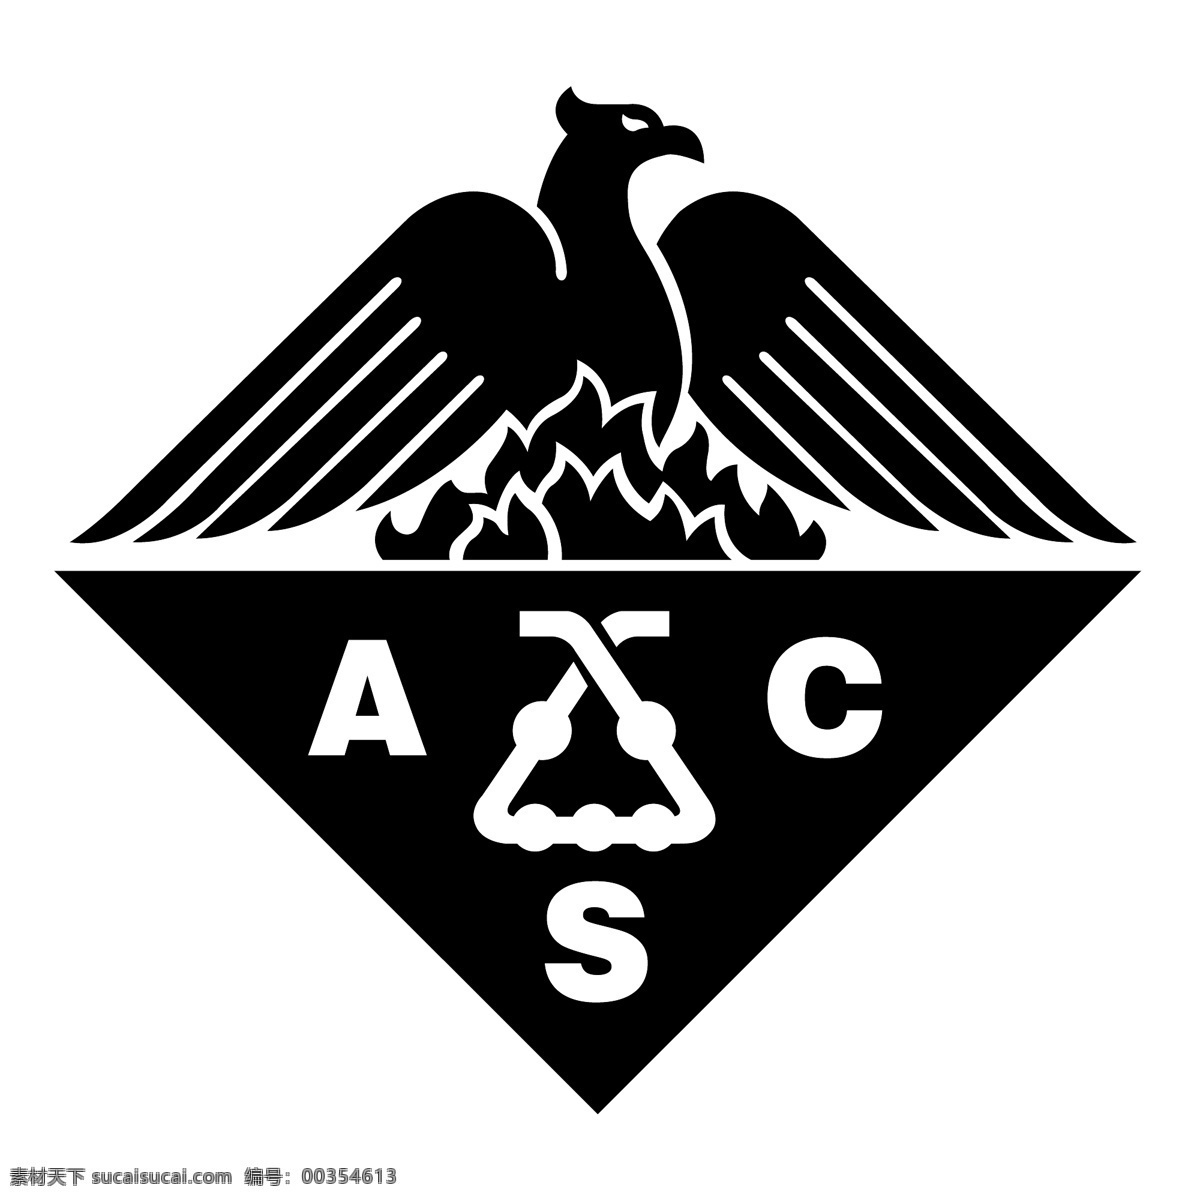 acs 矢量 标志 标识 向量 向量的acs acs标志 标志acs acs向量 eps矢量 蓝色